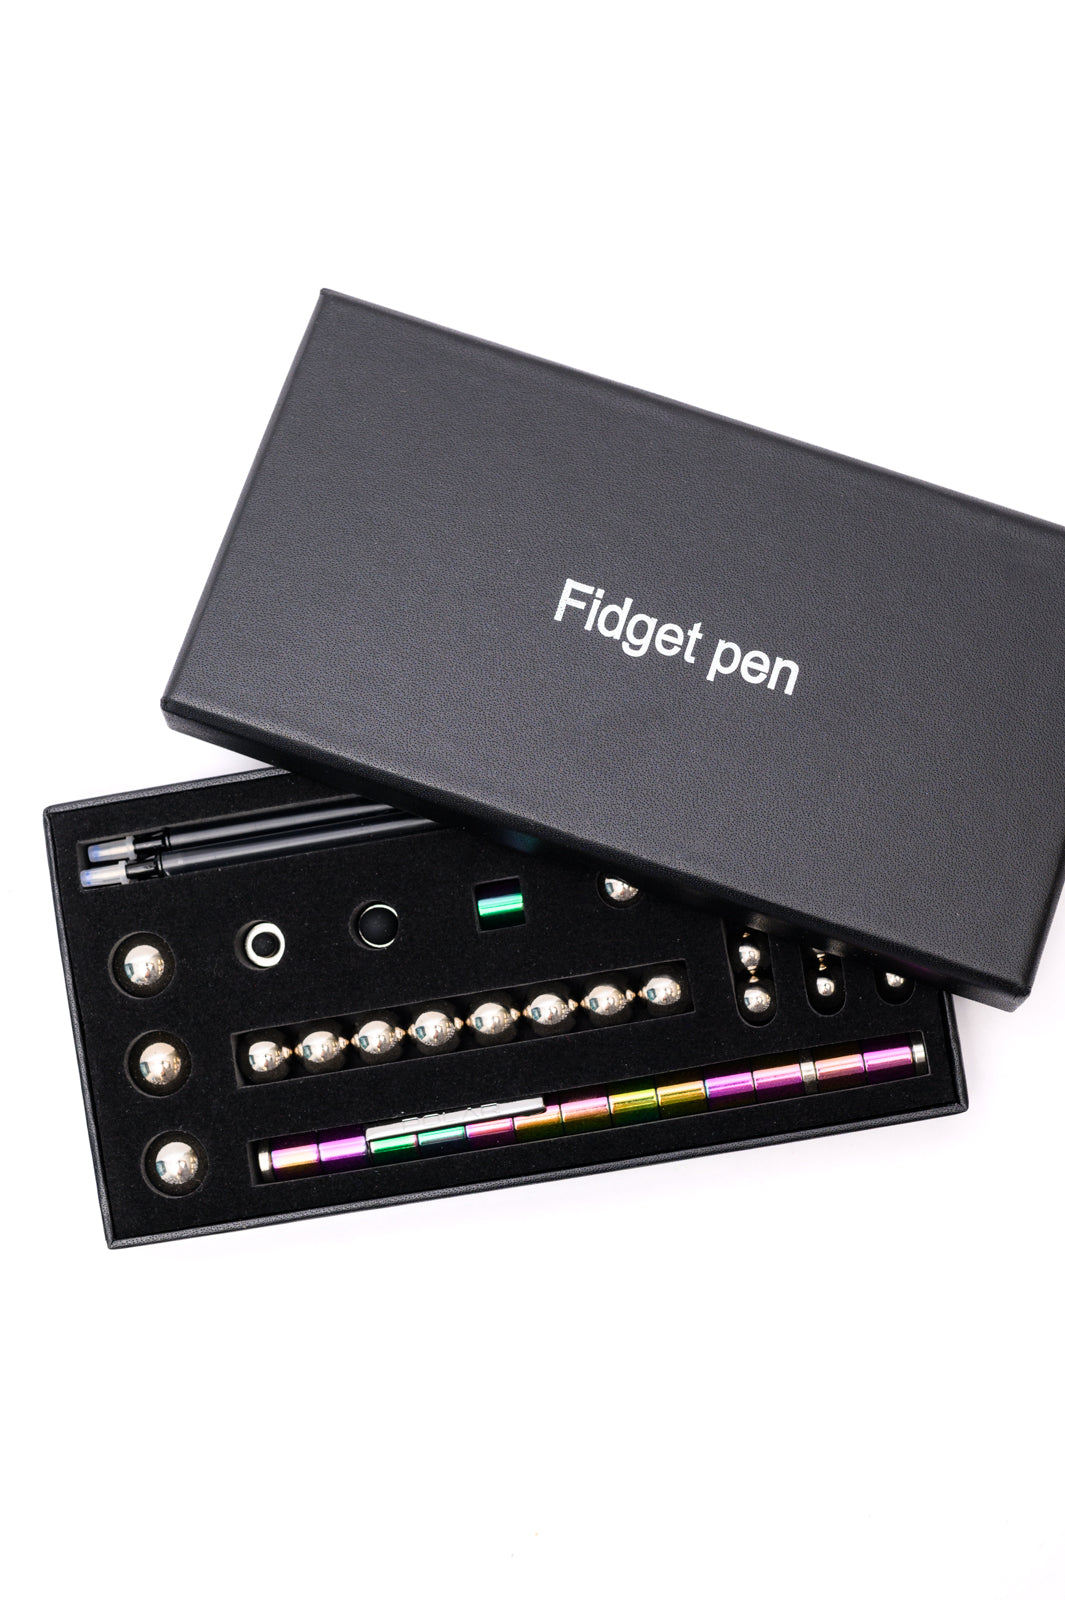 Bolígrafo magnético Fidget en arcoíris (exclusivo en línea)